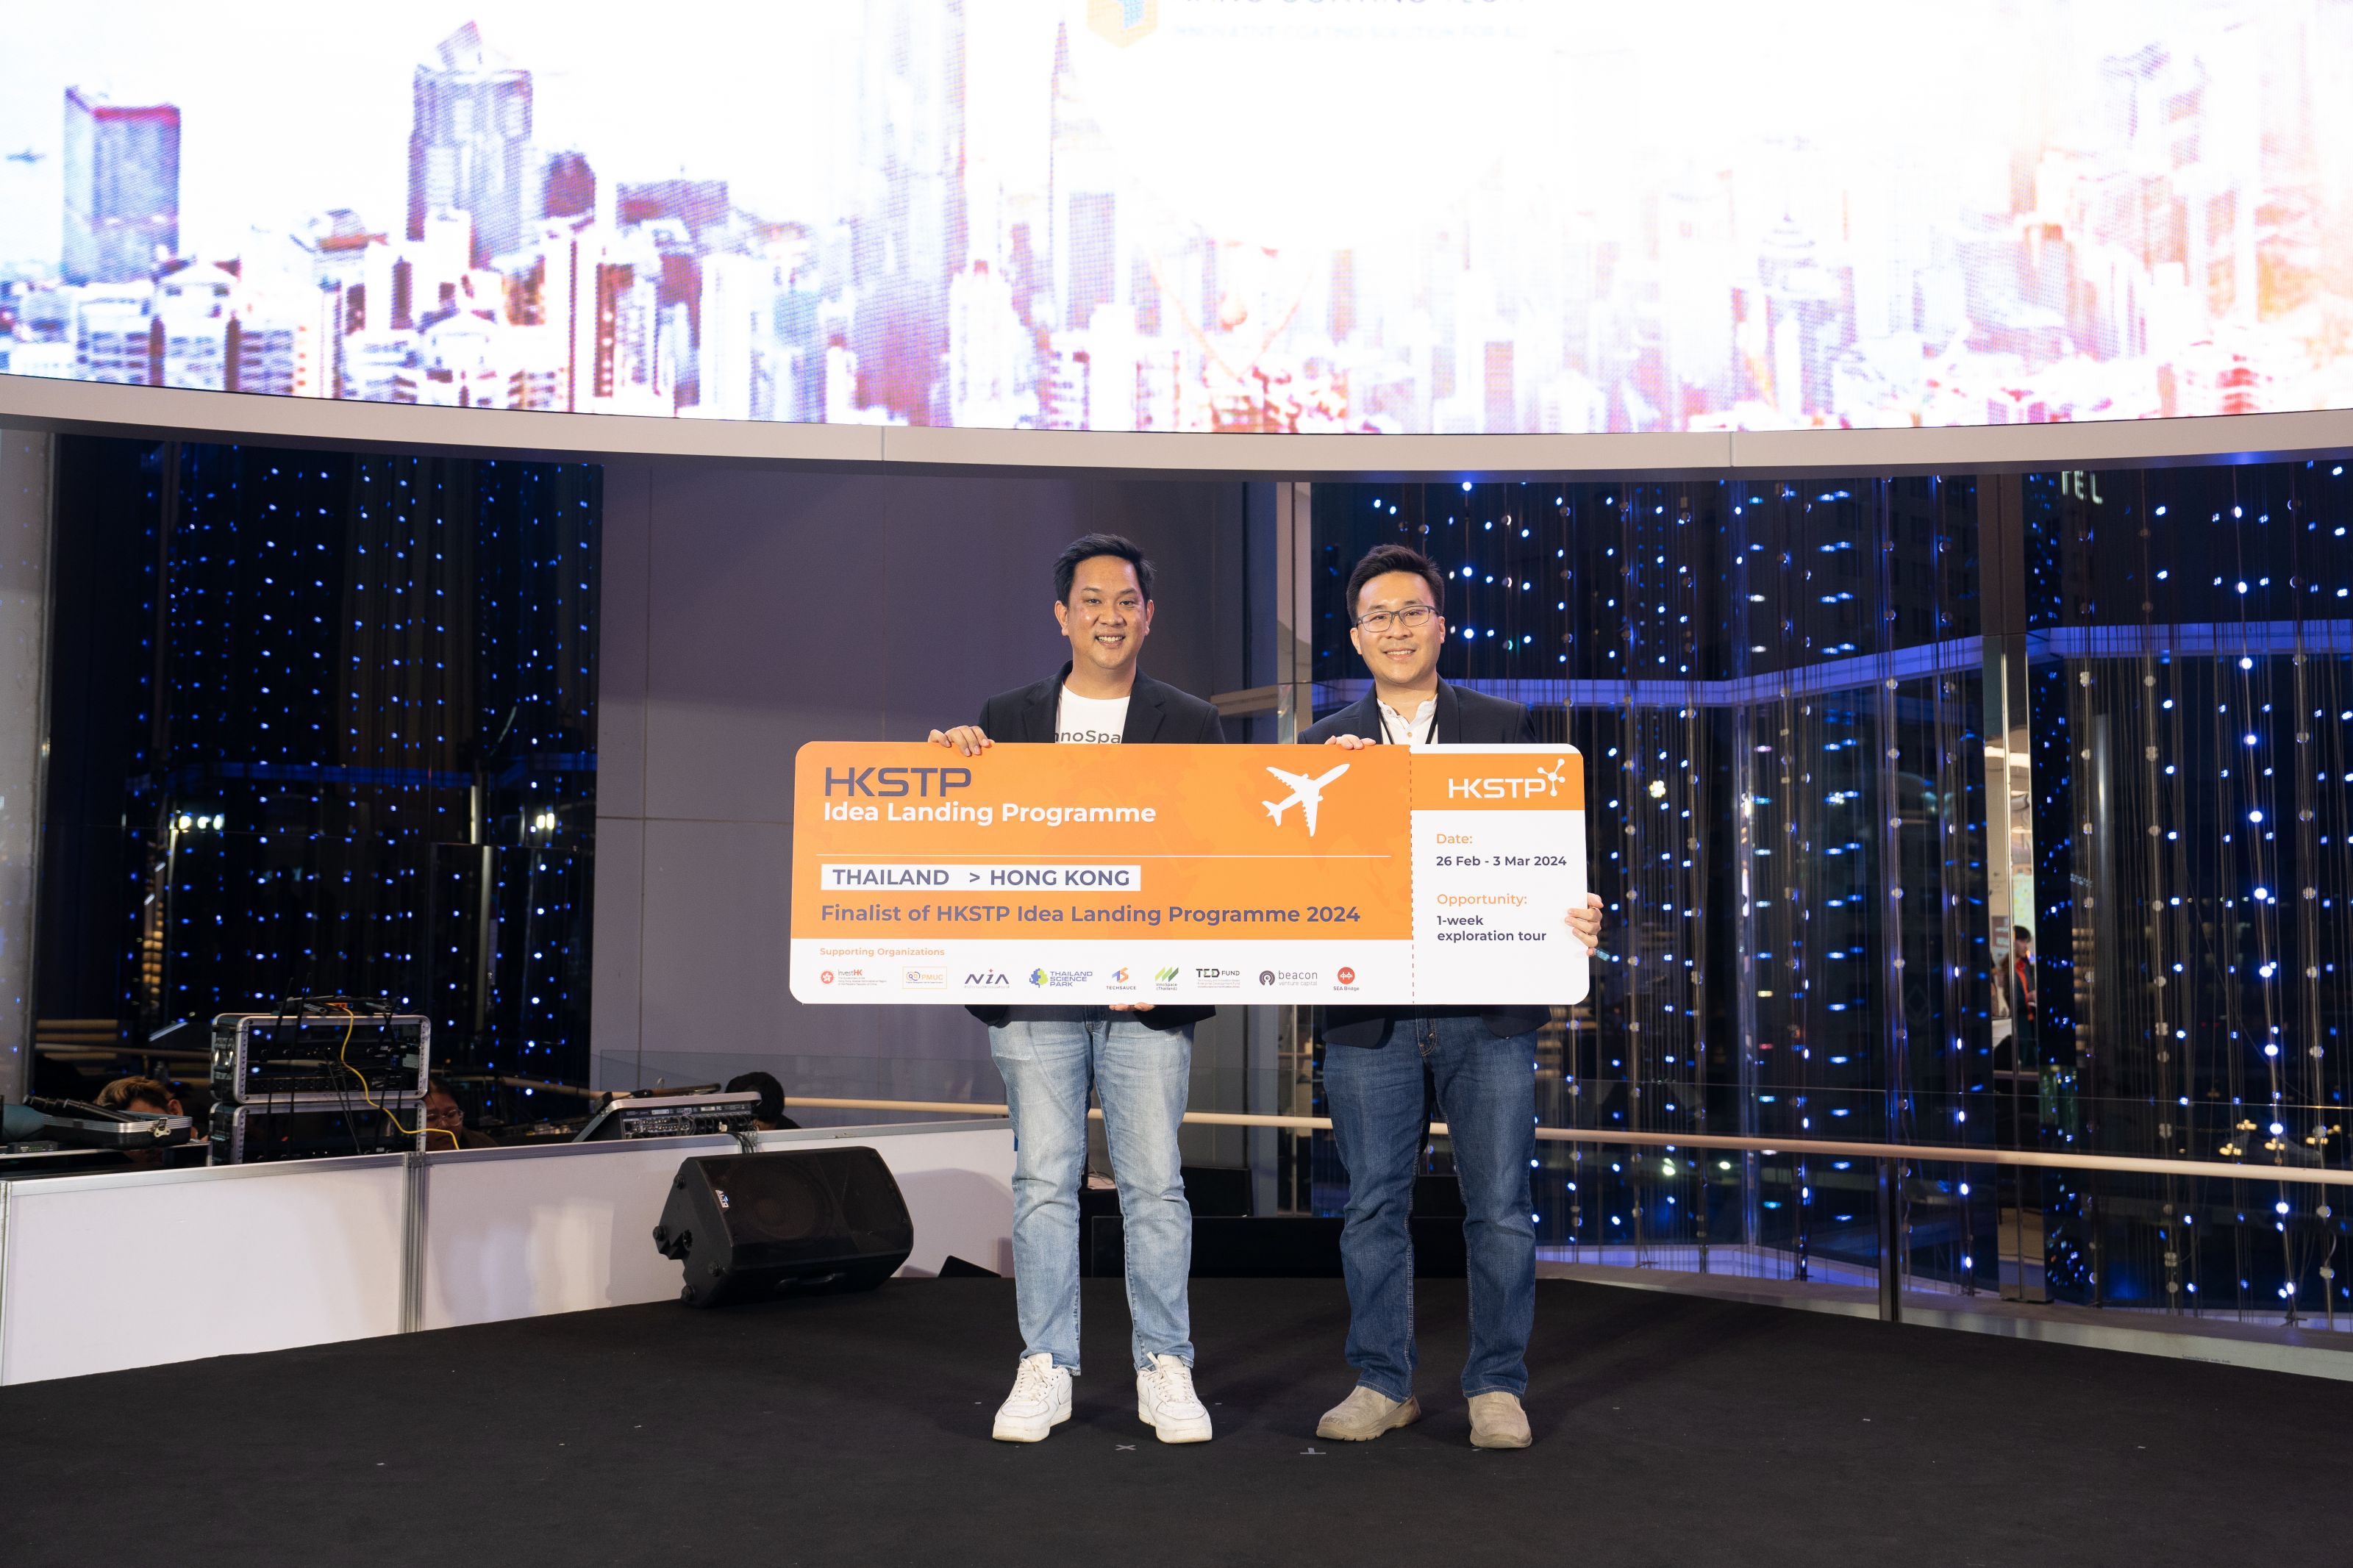 ขอแสดงความยินดีกับ 3 สตาร์ทอัพที่ได้มีโอกาสเข้าร่วมโปรแกรม HKSTP Idea Landing Programme 
				ที่ฮ่องกงและจีนพร้อมรับเงินสนับสนุน HKD 100,000